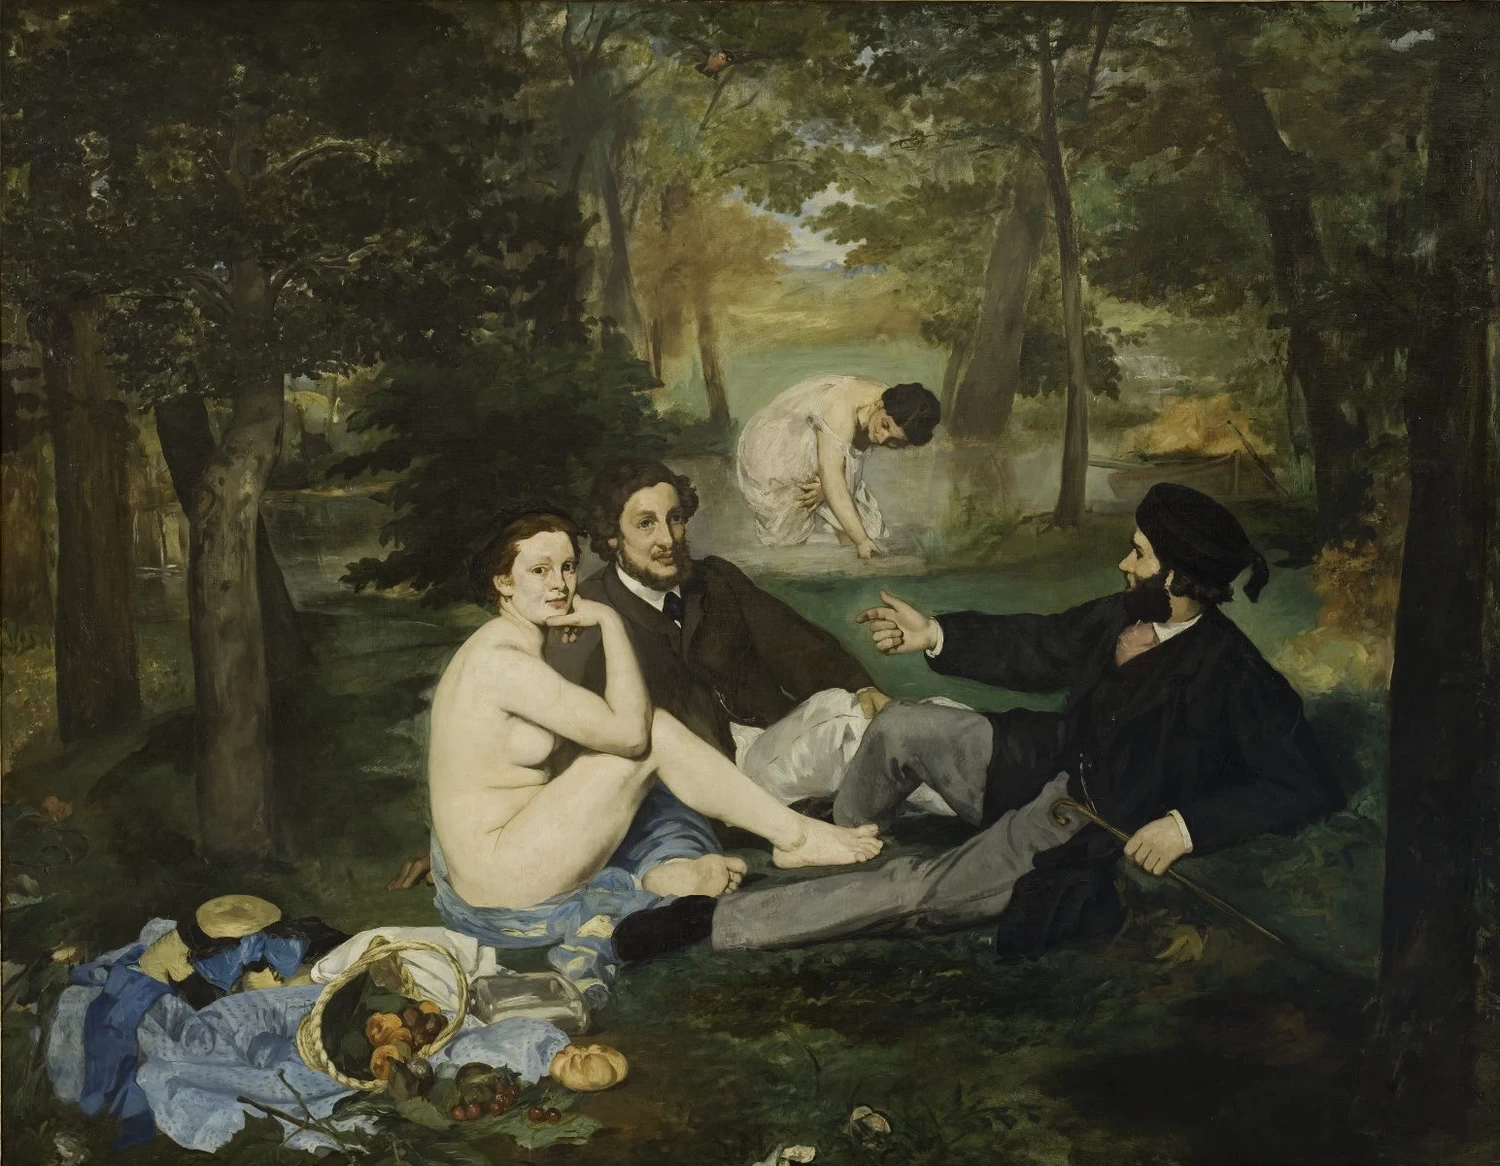   75-Édouard Manet, Colazione sull'erba, 1863-Museo d'Orsay, Parigi